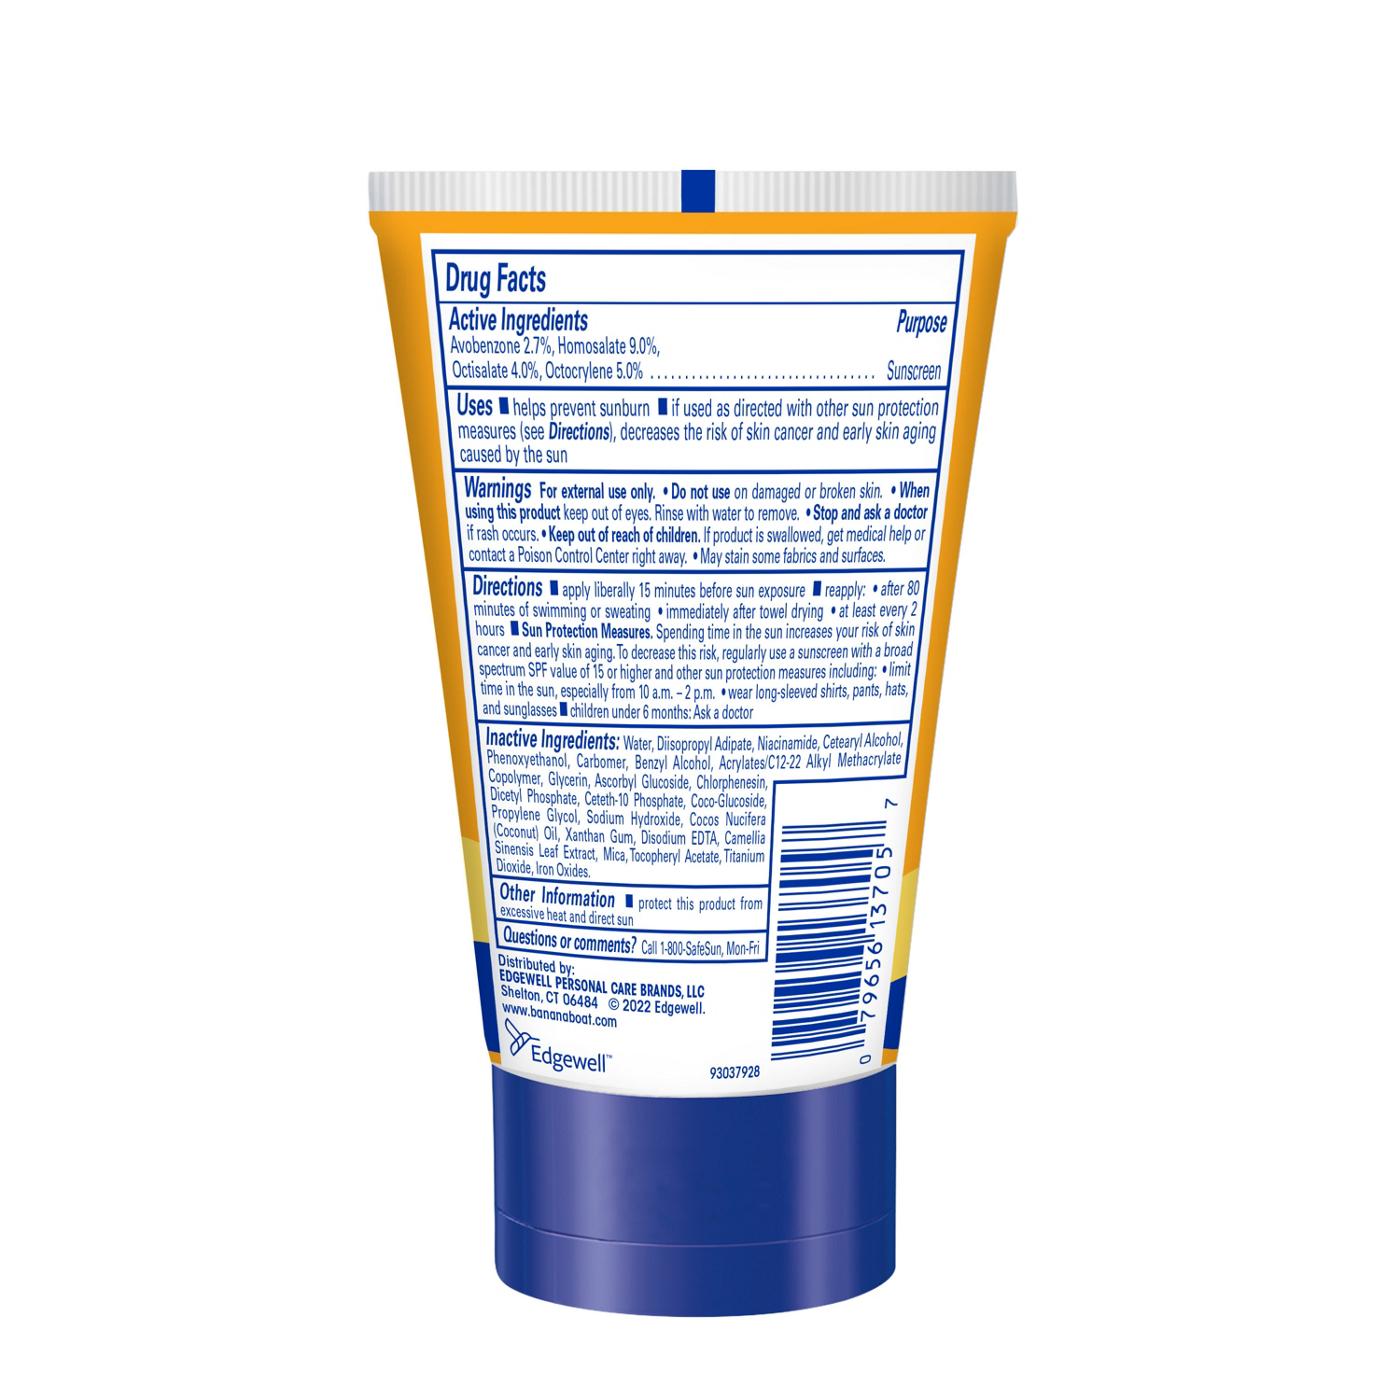 Banana Boat Protection + Vitamins Face Sunscreen Lotion - SPF 50+; image 4 of 9